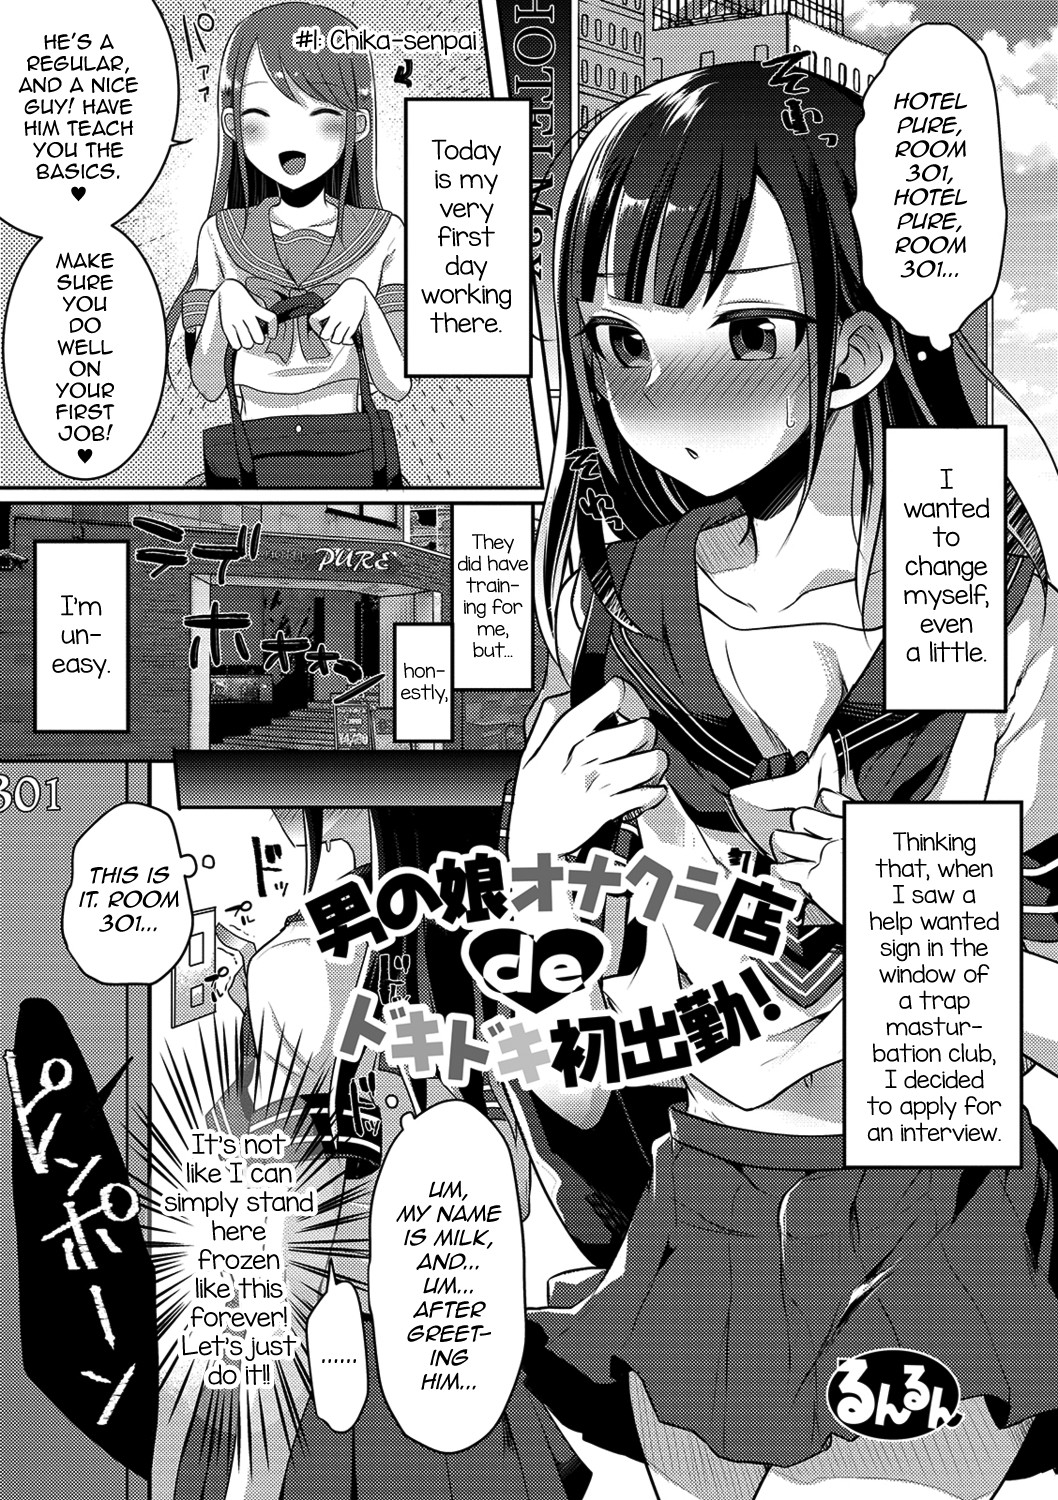 Traps hentai manga